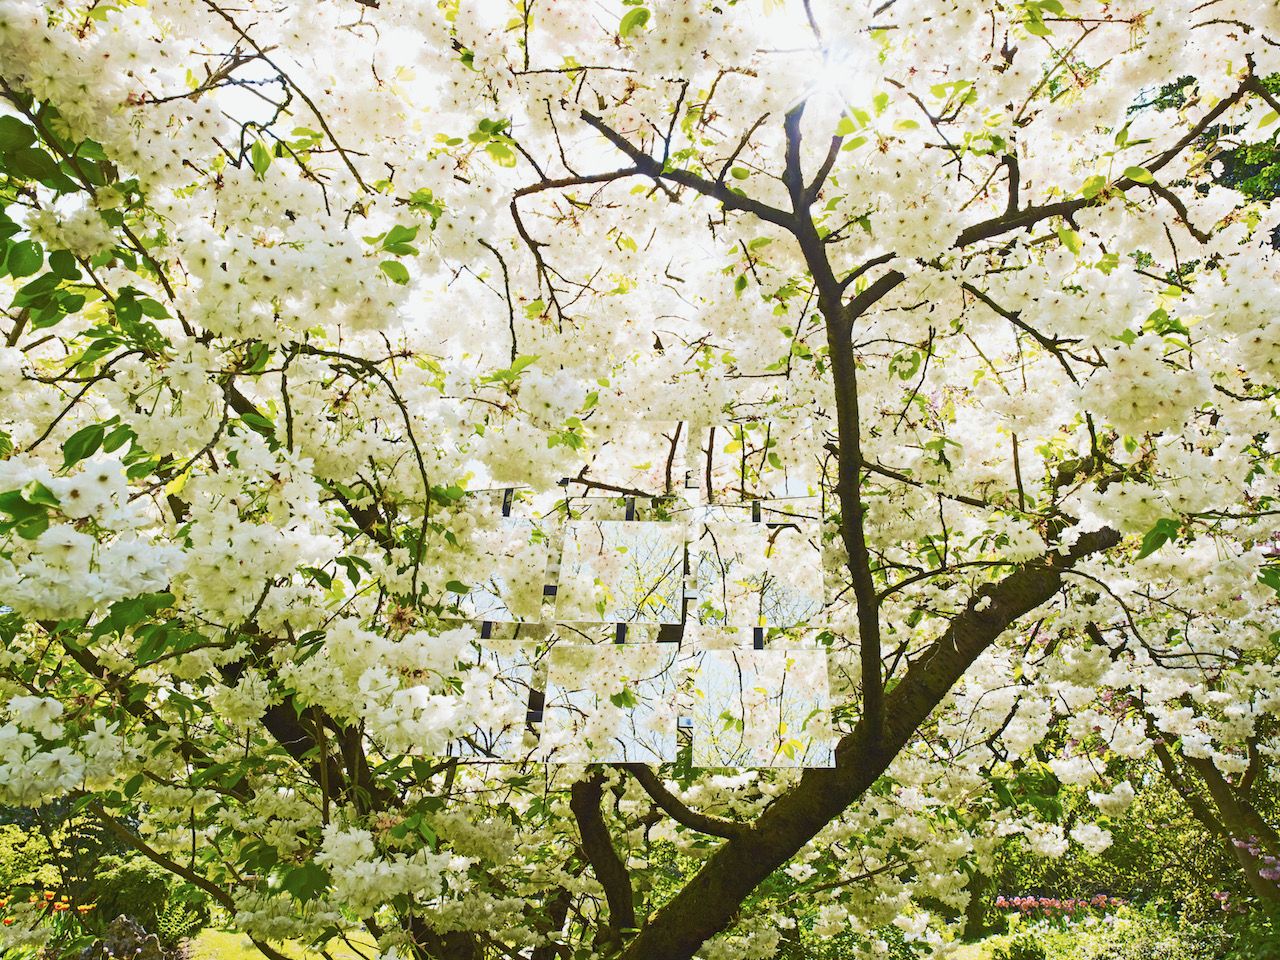 Michael Haegele Nature Photographie Vue intérieure Couronne d'arbre avec fleurs blanches et neuf miroirs disposés